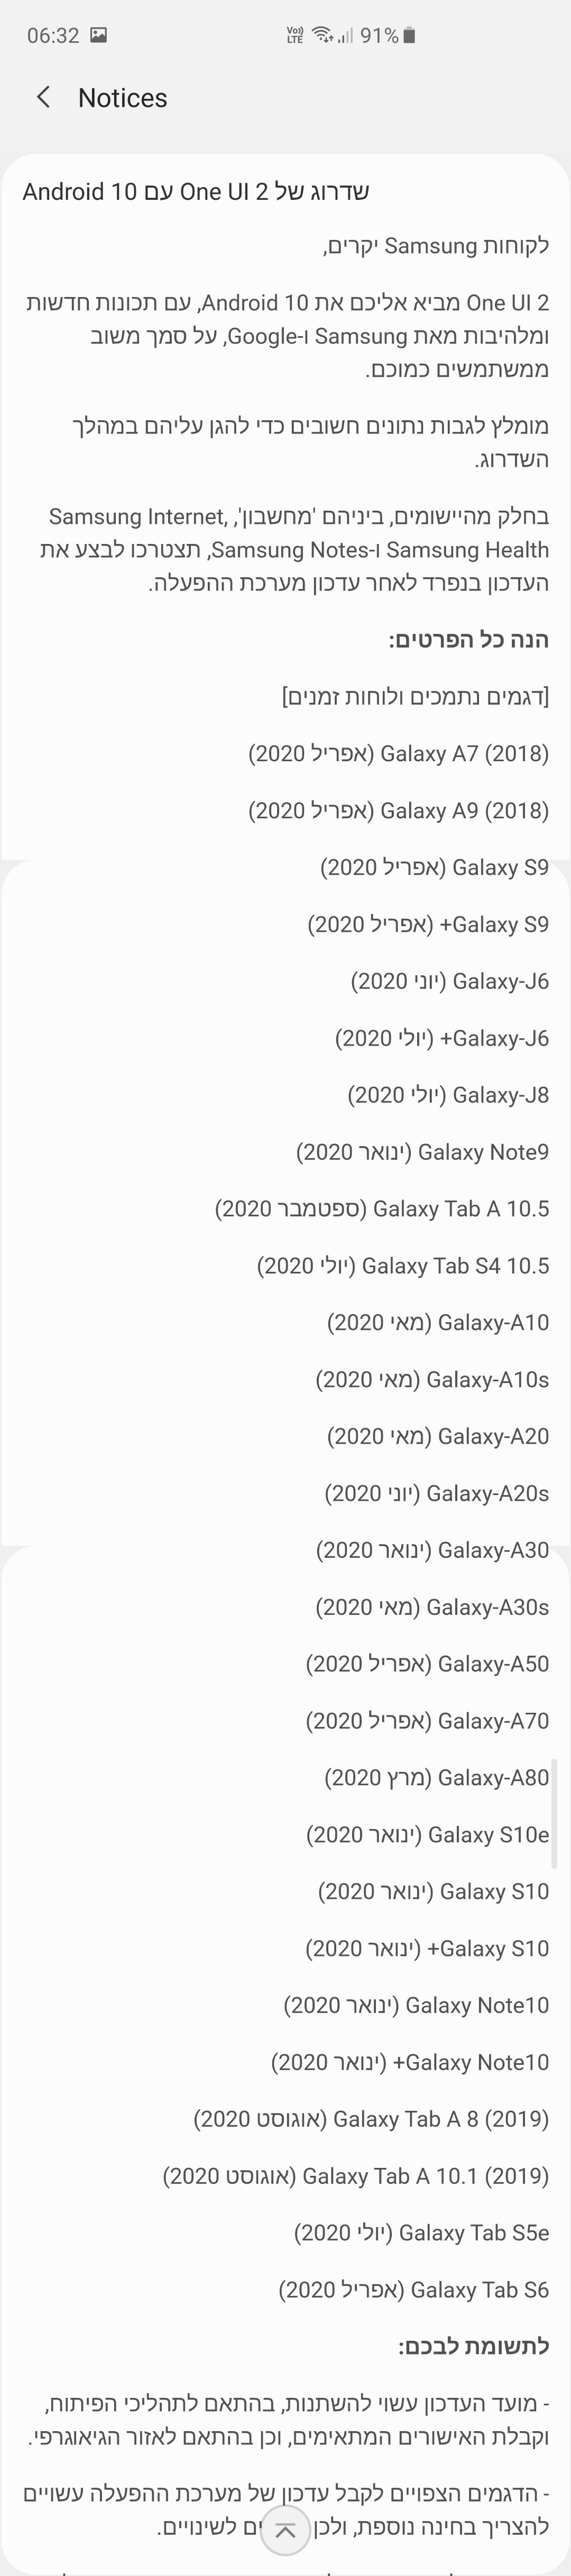 Samsung tiết lộ lịch cập nhật Android 10 cho
Galaxy S10, Note 10, Note 9 và các máy Galaxy khác